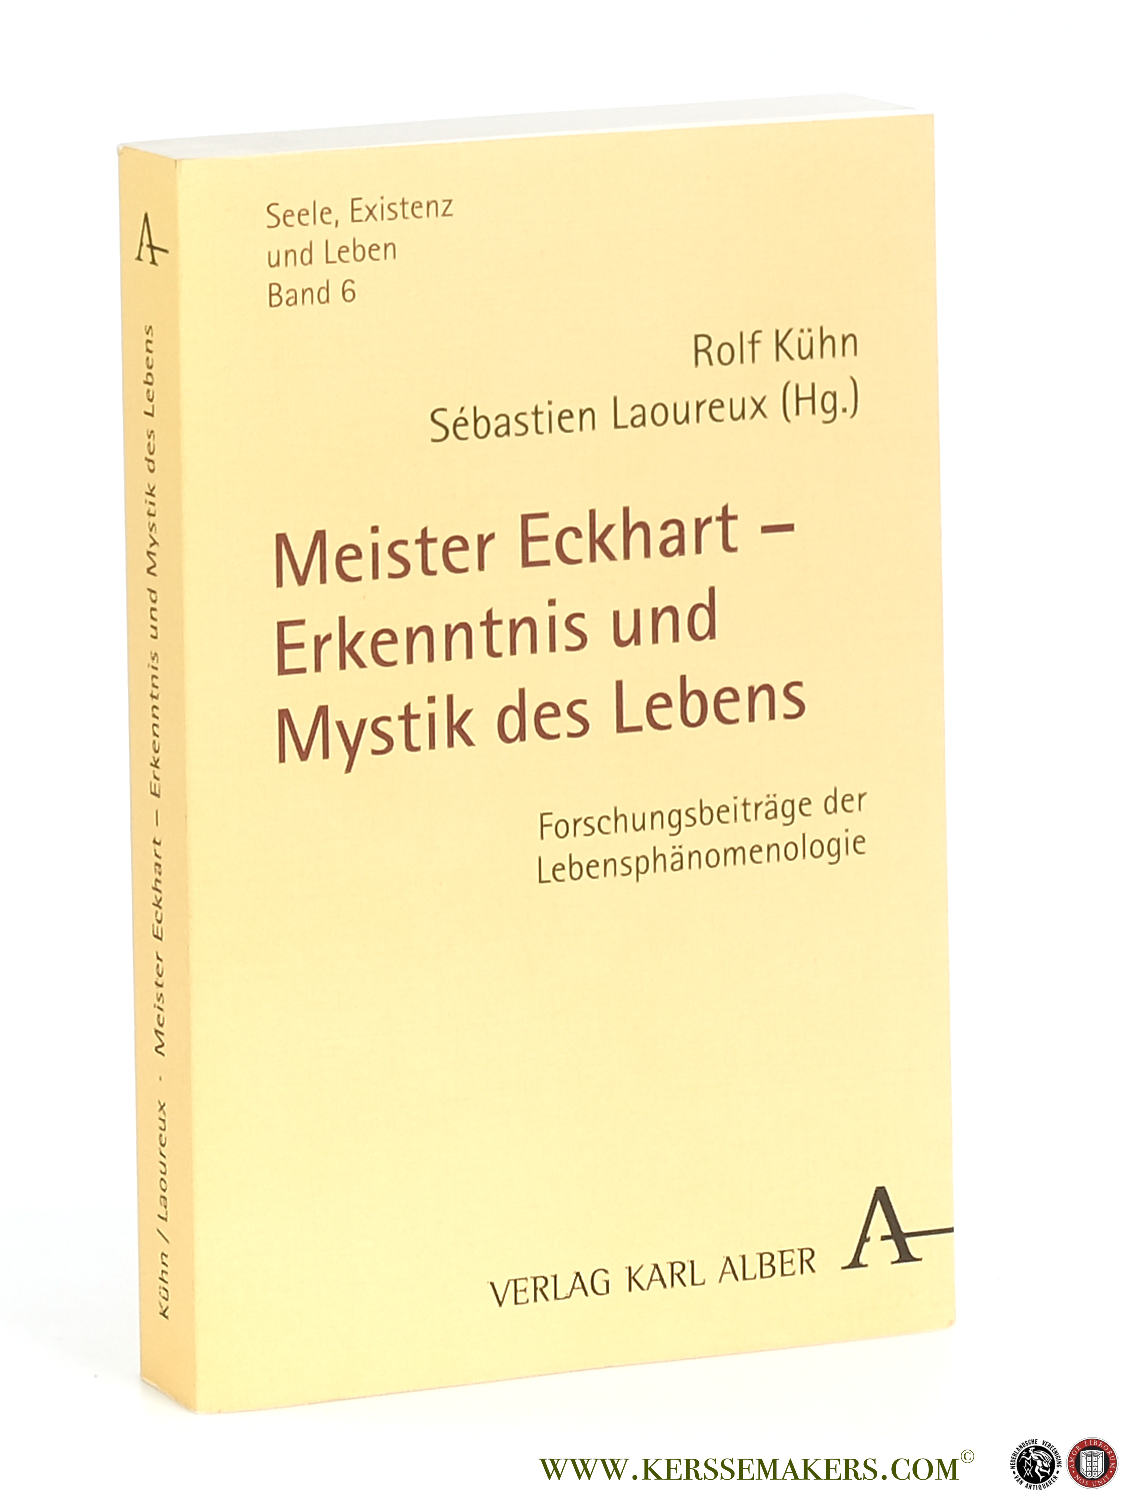 Meister Eckhart - Erkenntnis und Mystik des Lebens. Forschungsbeiträge der Lebensphänomenologie. - Kühn, Rolf / Sébastien Laoureux (eds.).